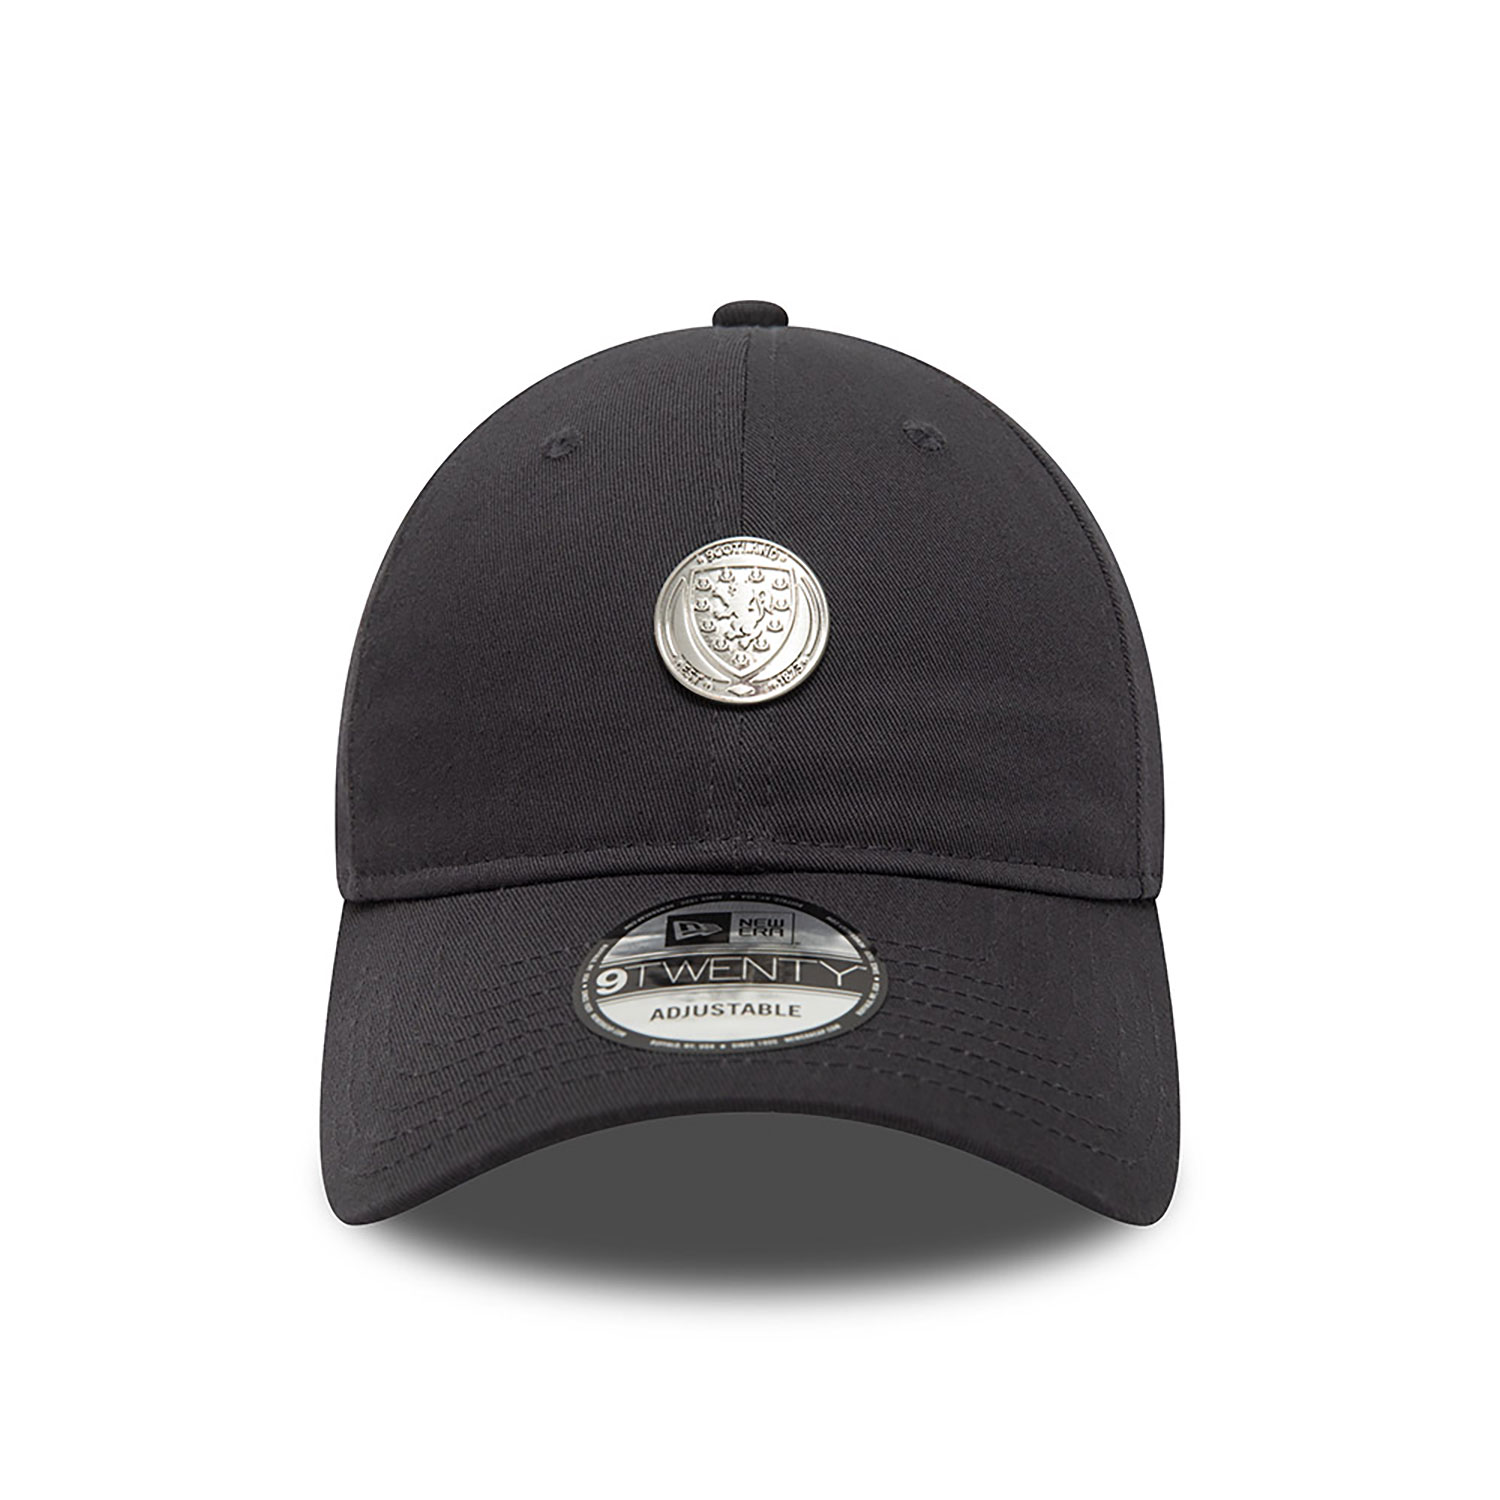 Scottish FA Hats, Caps & Headwear | New Era Cap UK